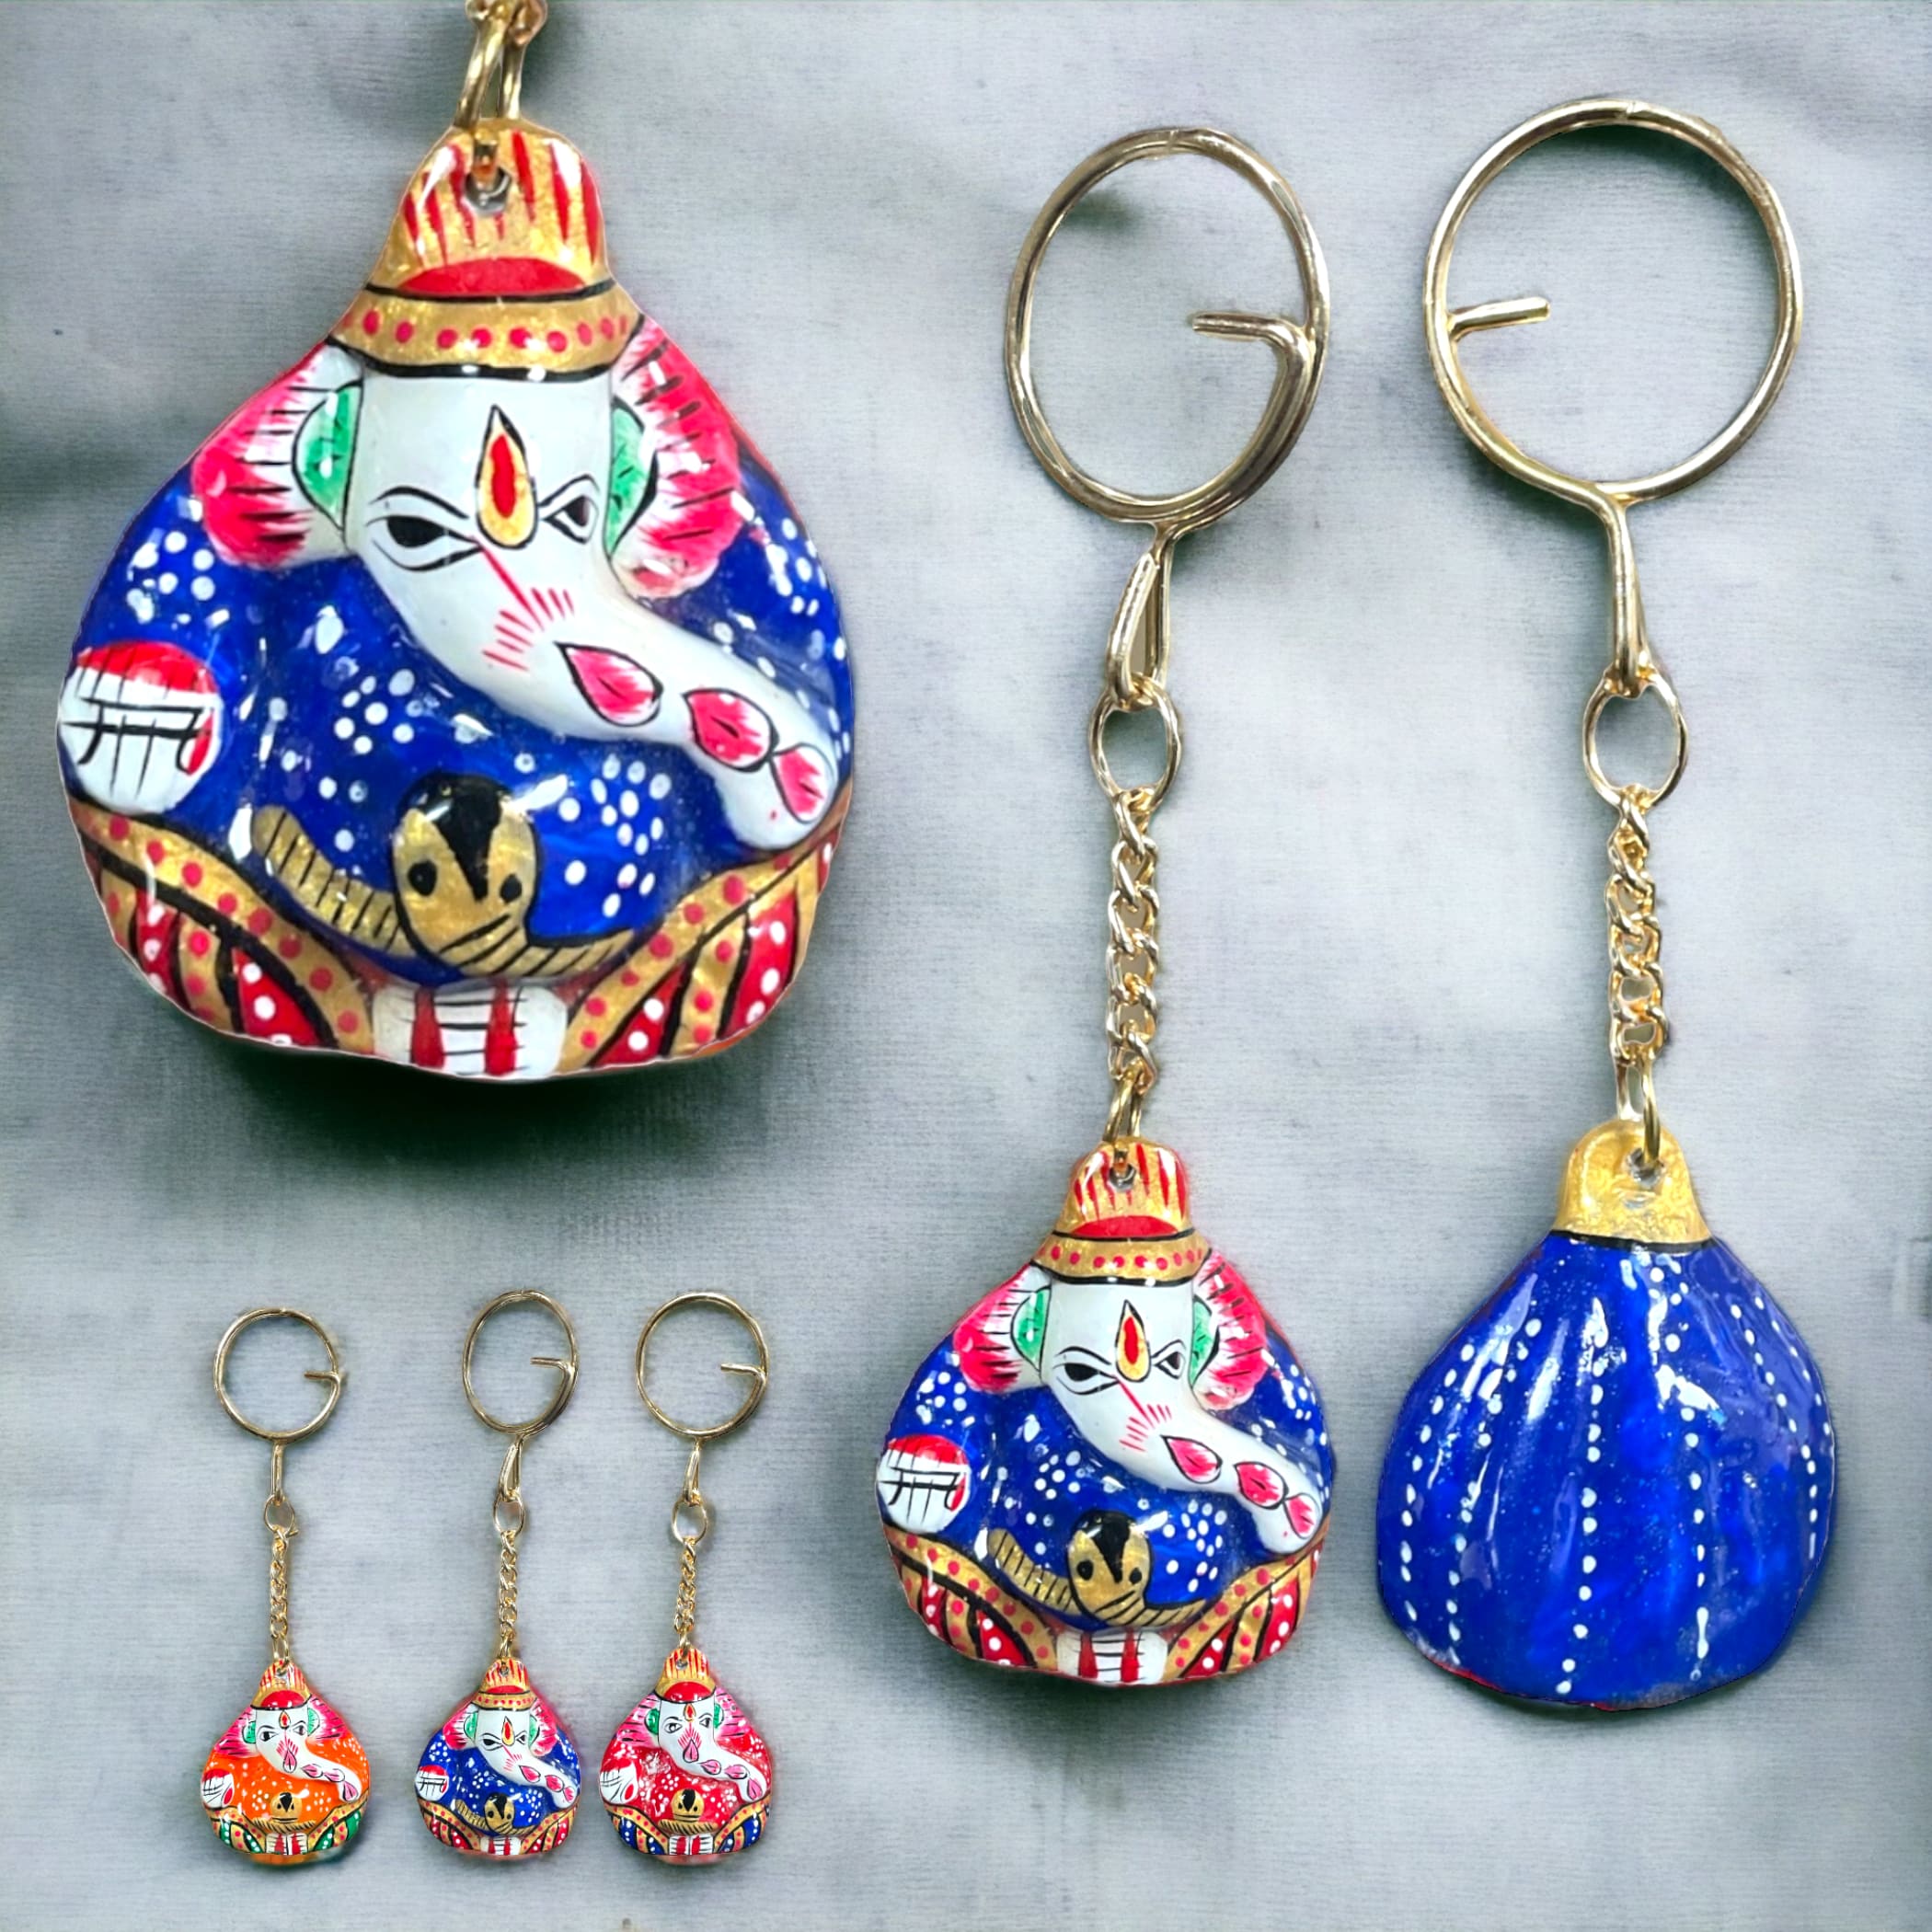 Modak ganesh handmade keychain ceramic keychains & lanyards